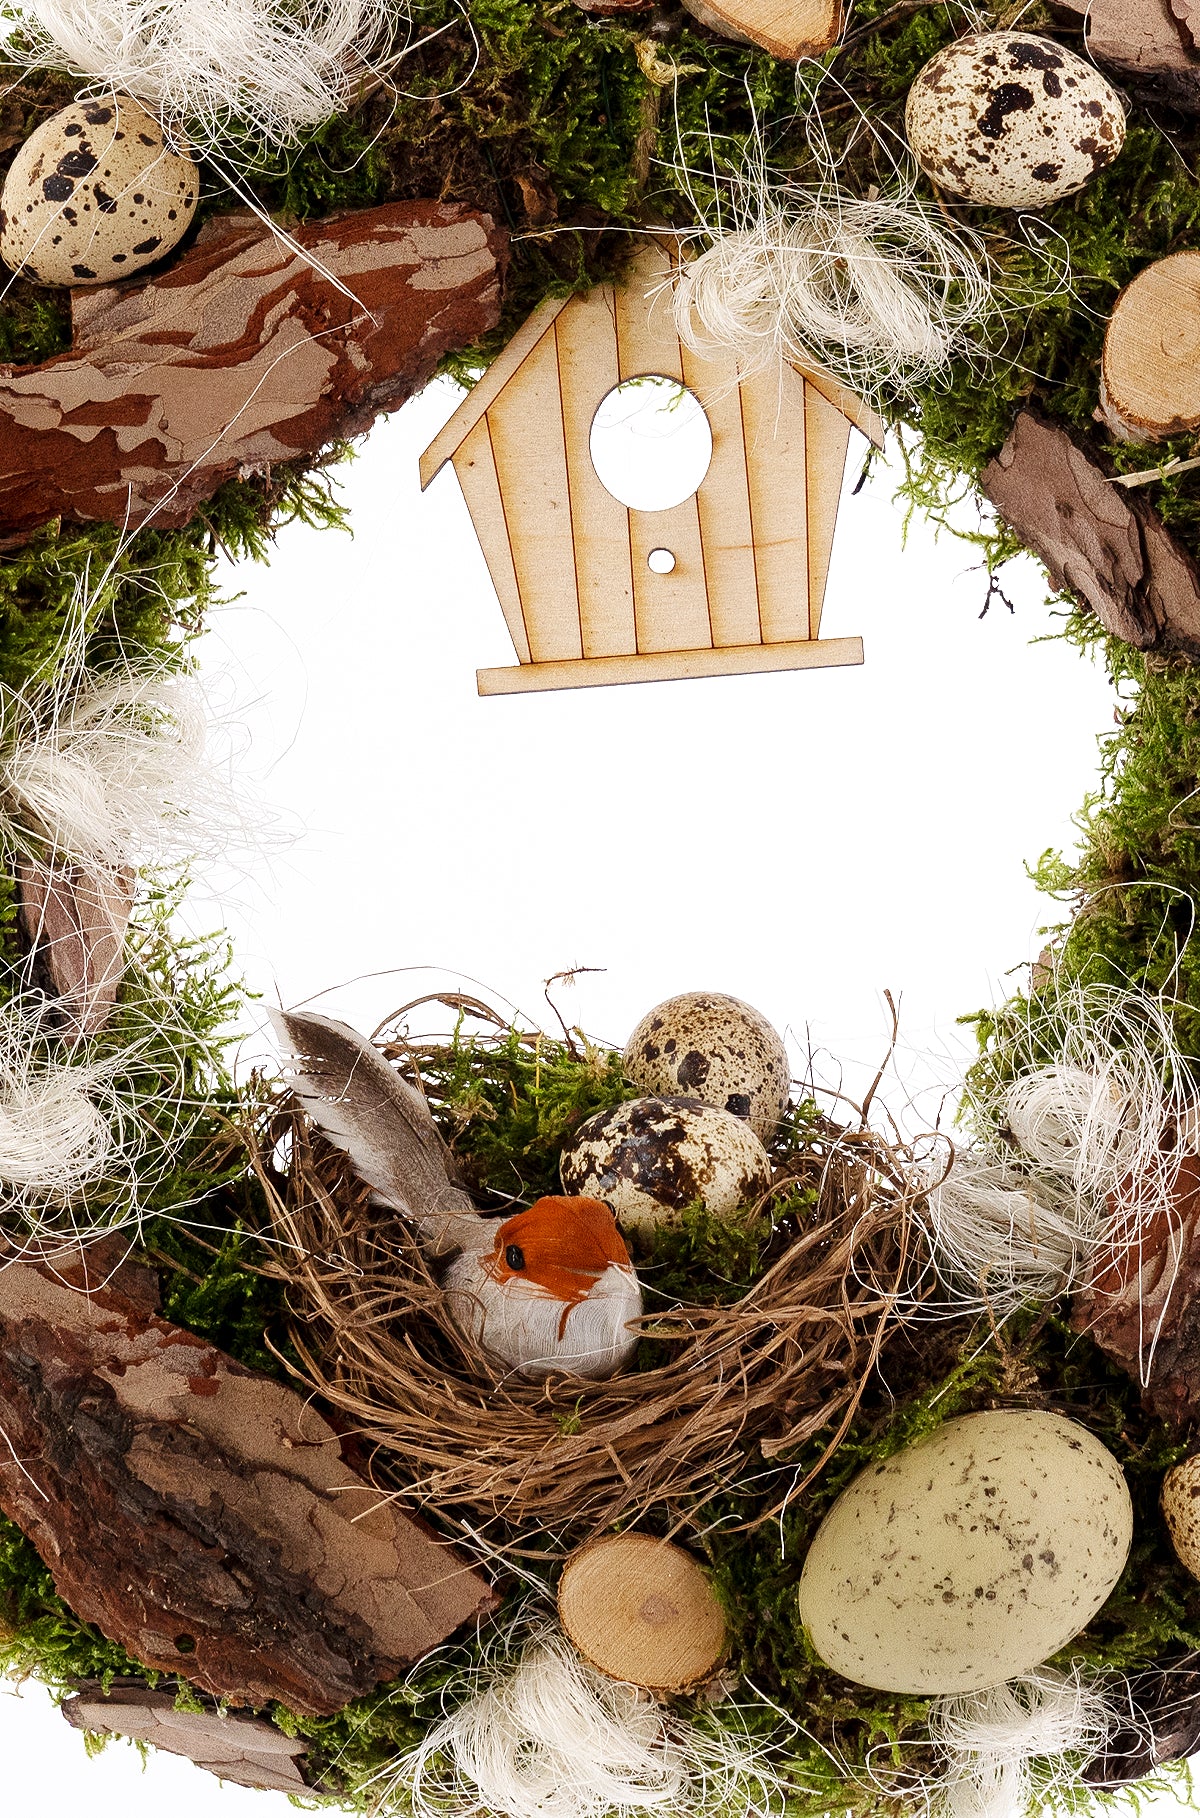 Detailansicht des ökologischen Türkranzes 'Ostern natur', der Frühlingsfrische mit Moos, Holzelementen und einem Nest mit Eiern verbindet.